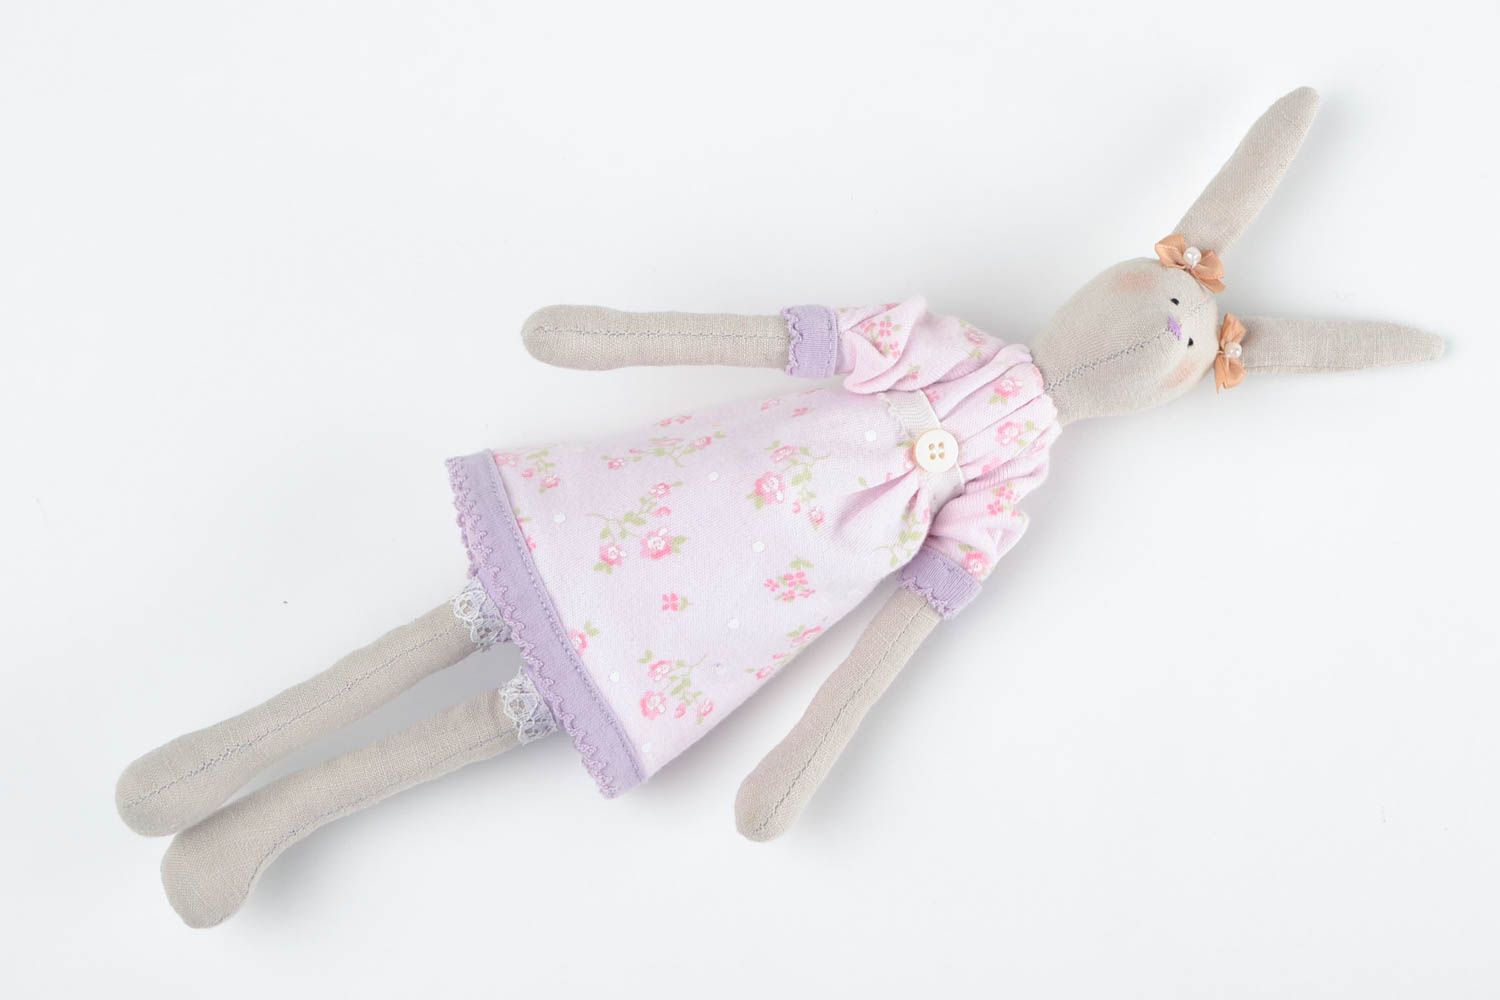 Игрушка заяц авторская игрушка ручной работы из ткани мягкая игрушка для ребенка фото 4